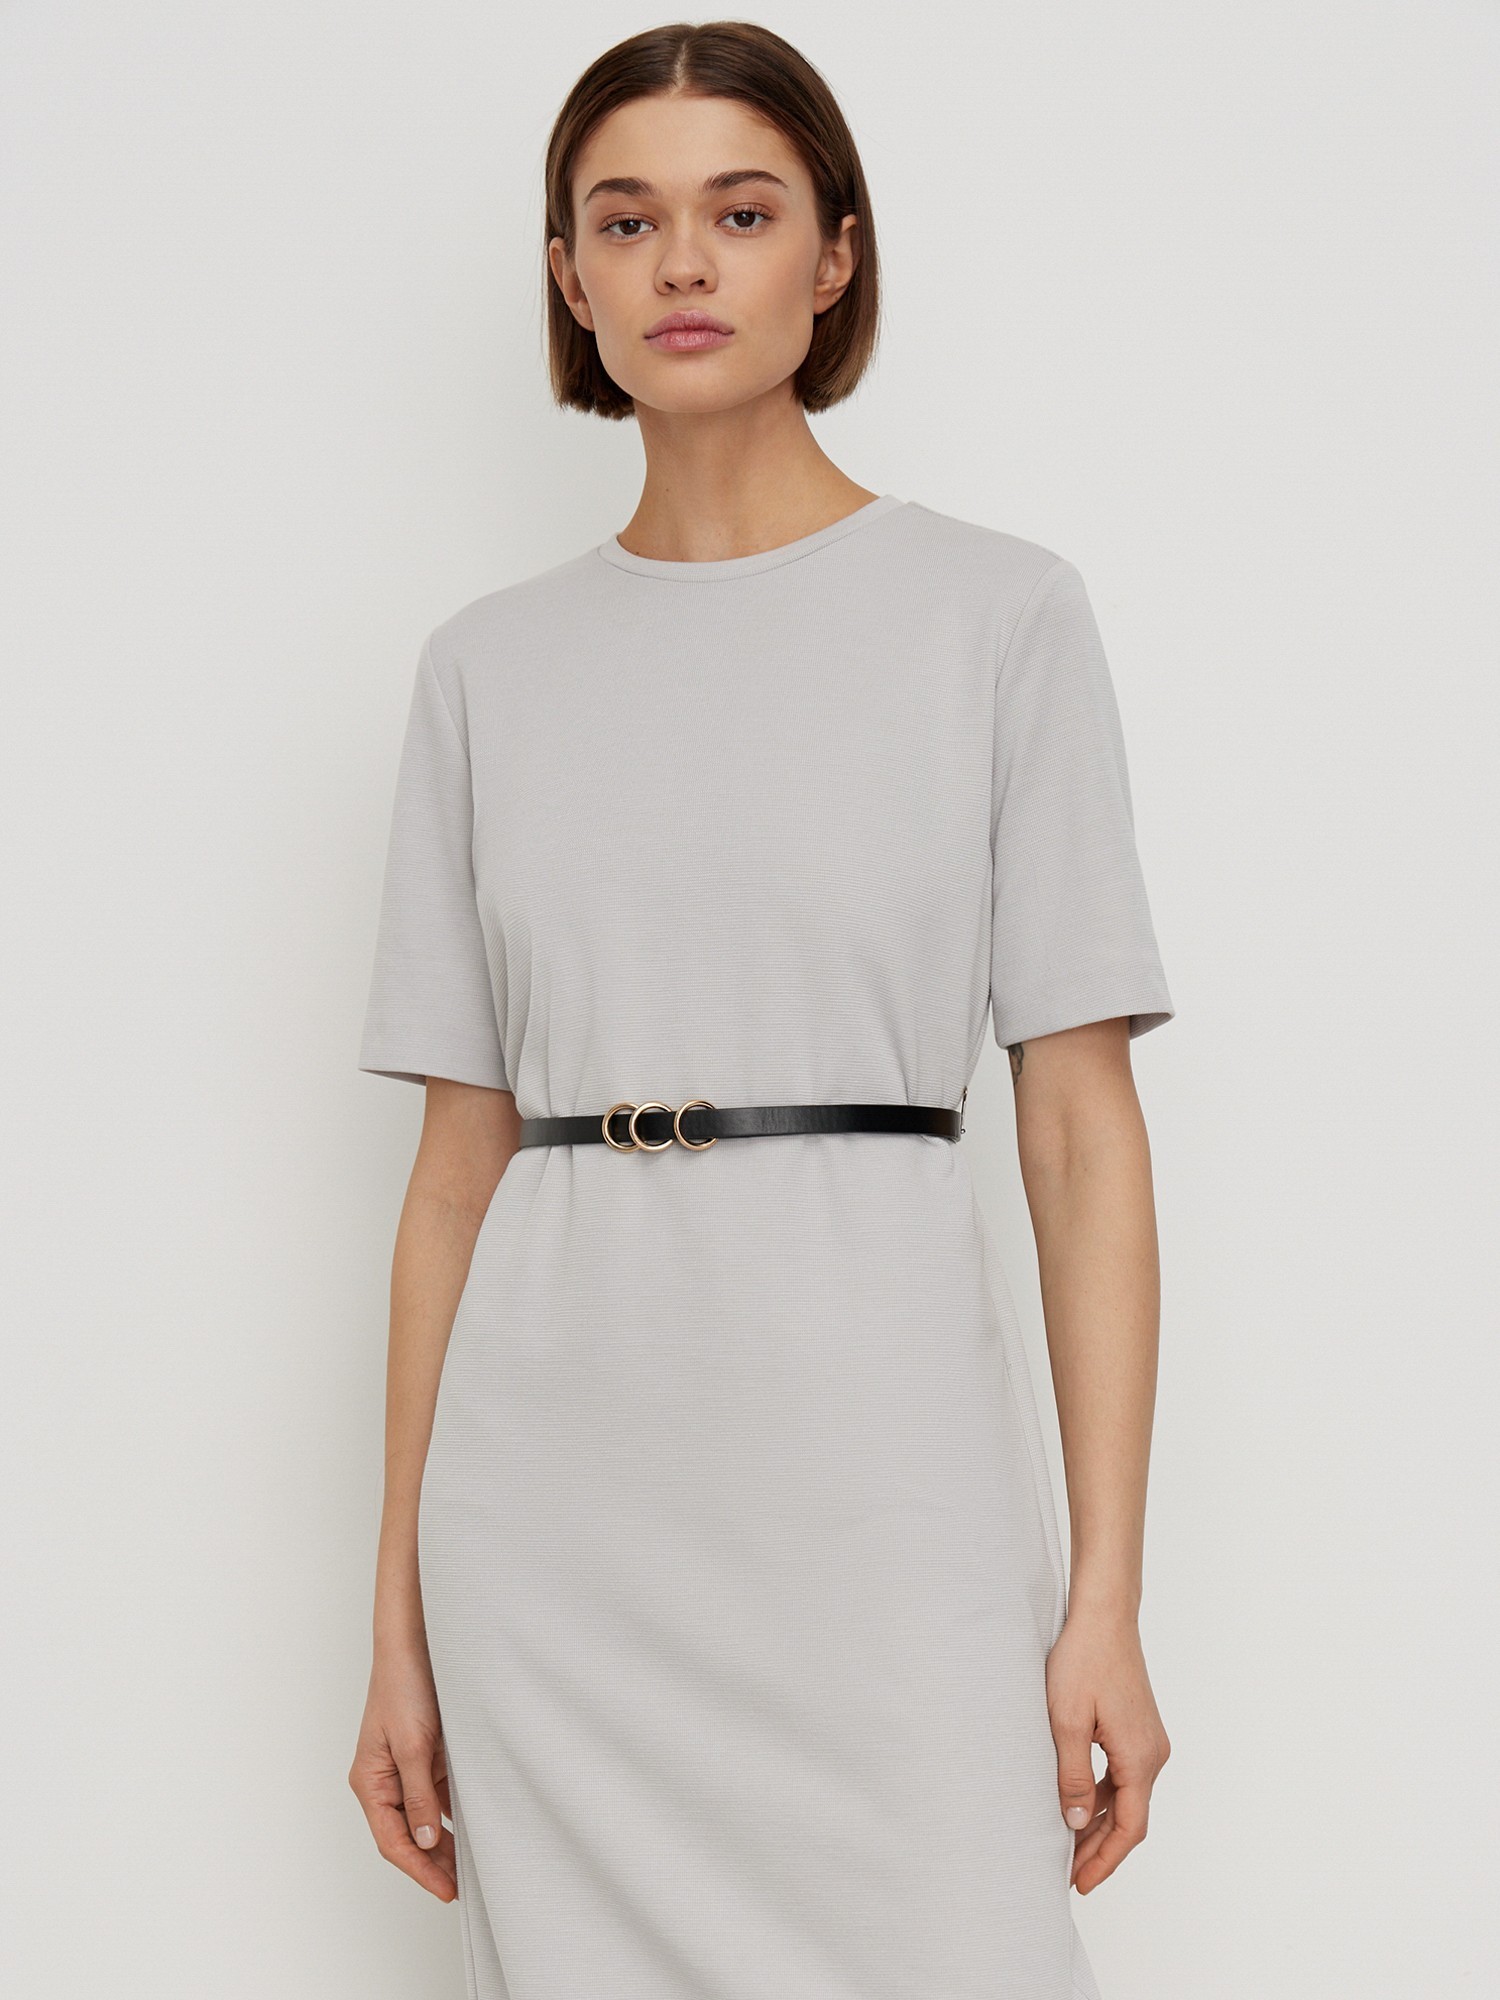 Платье с коротким рукавом трикотажное Elis DR0496K, цвет серый, размер 42 - фото 2